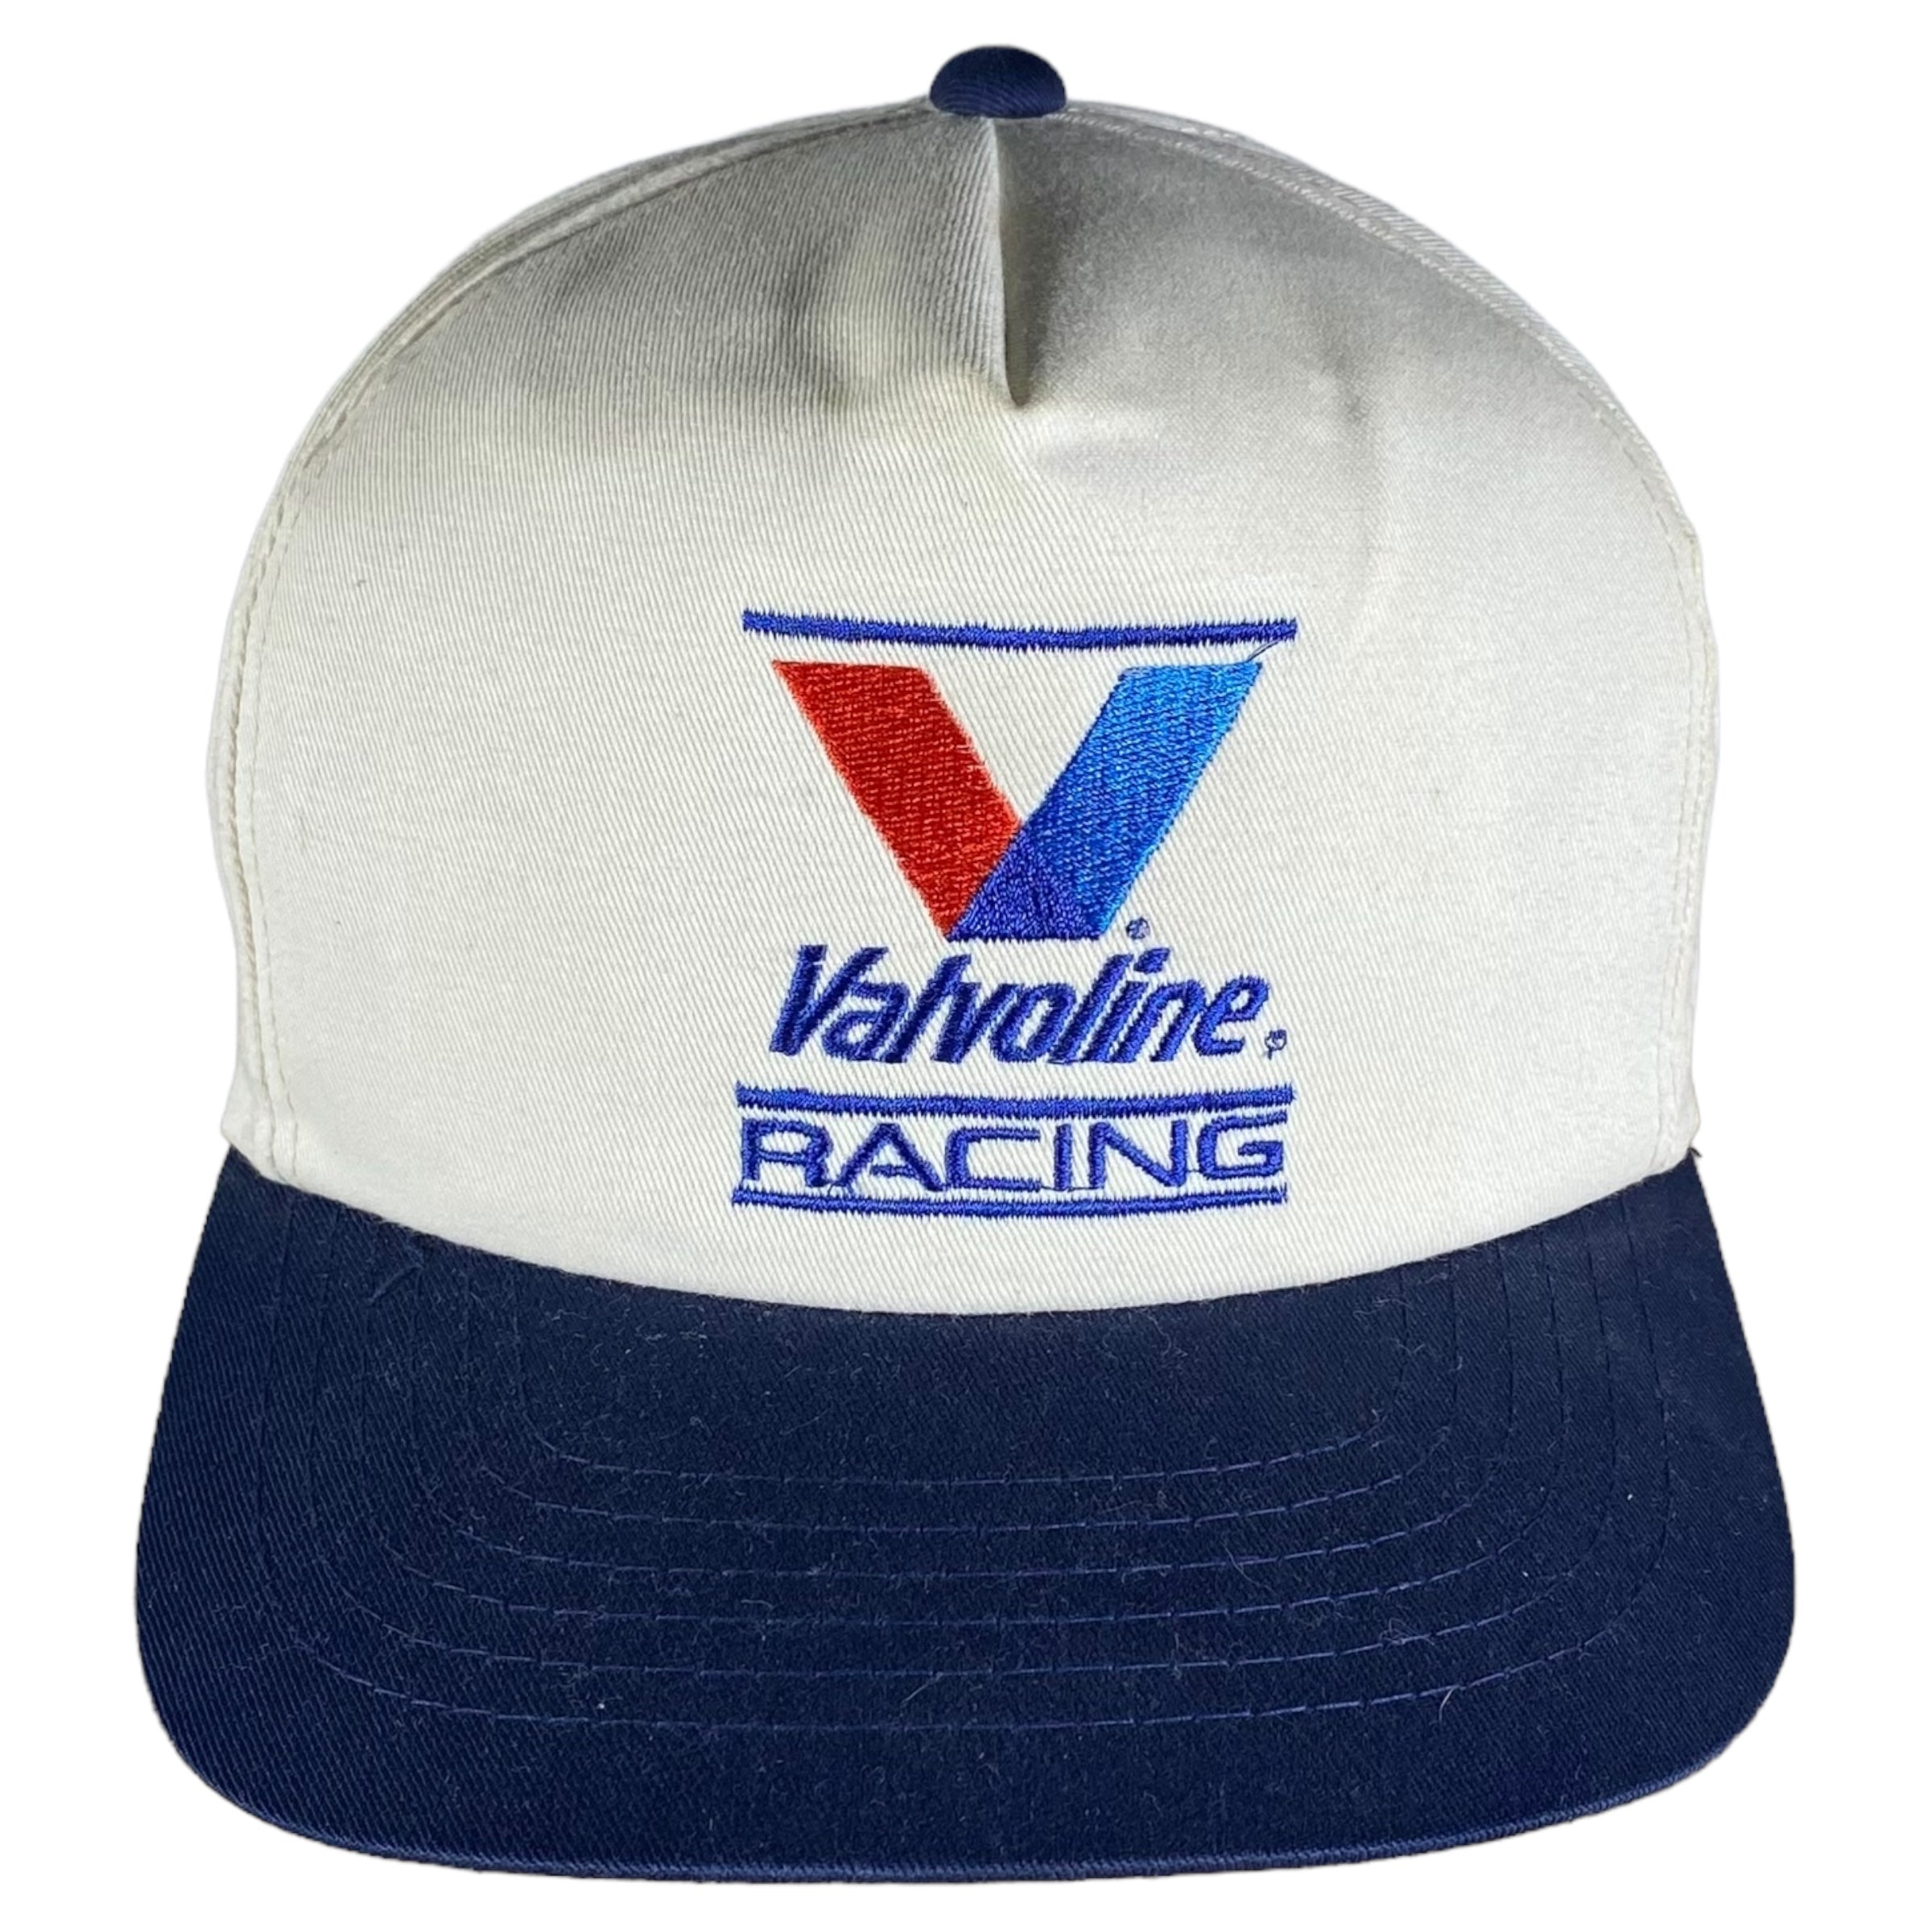 Vintage Valvoline Racing Snapback Hat